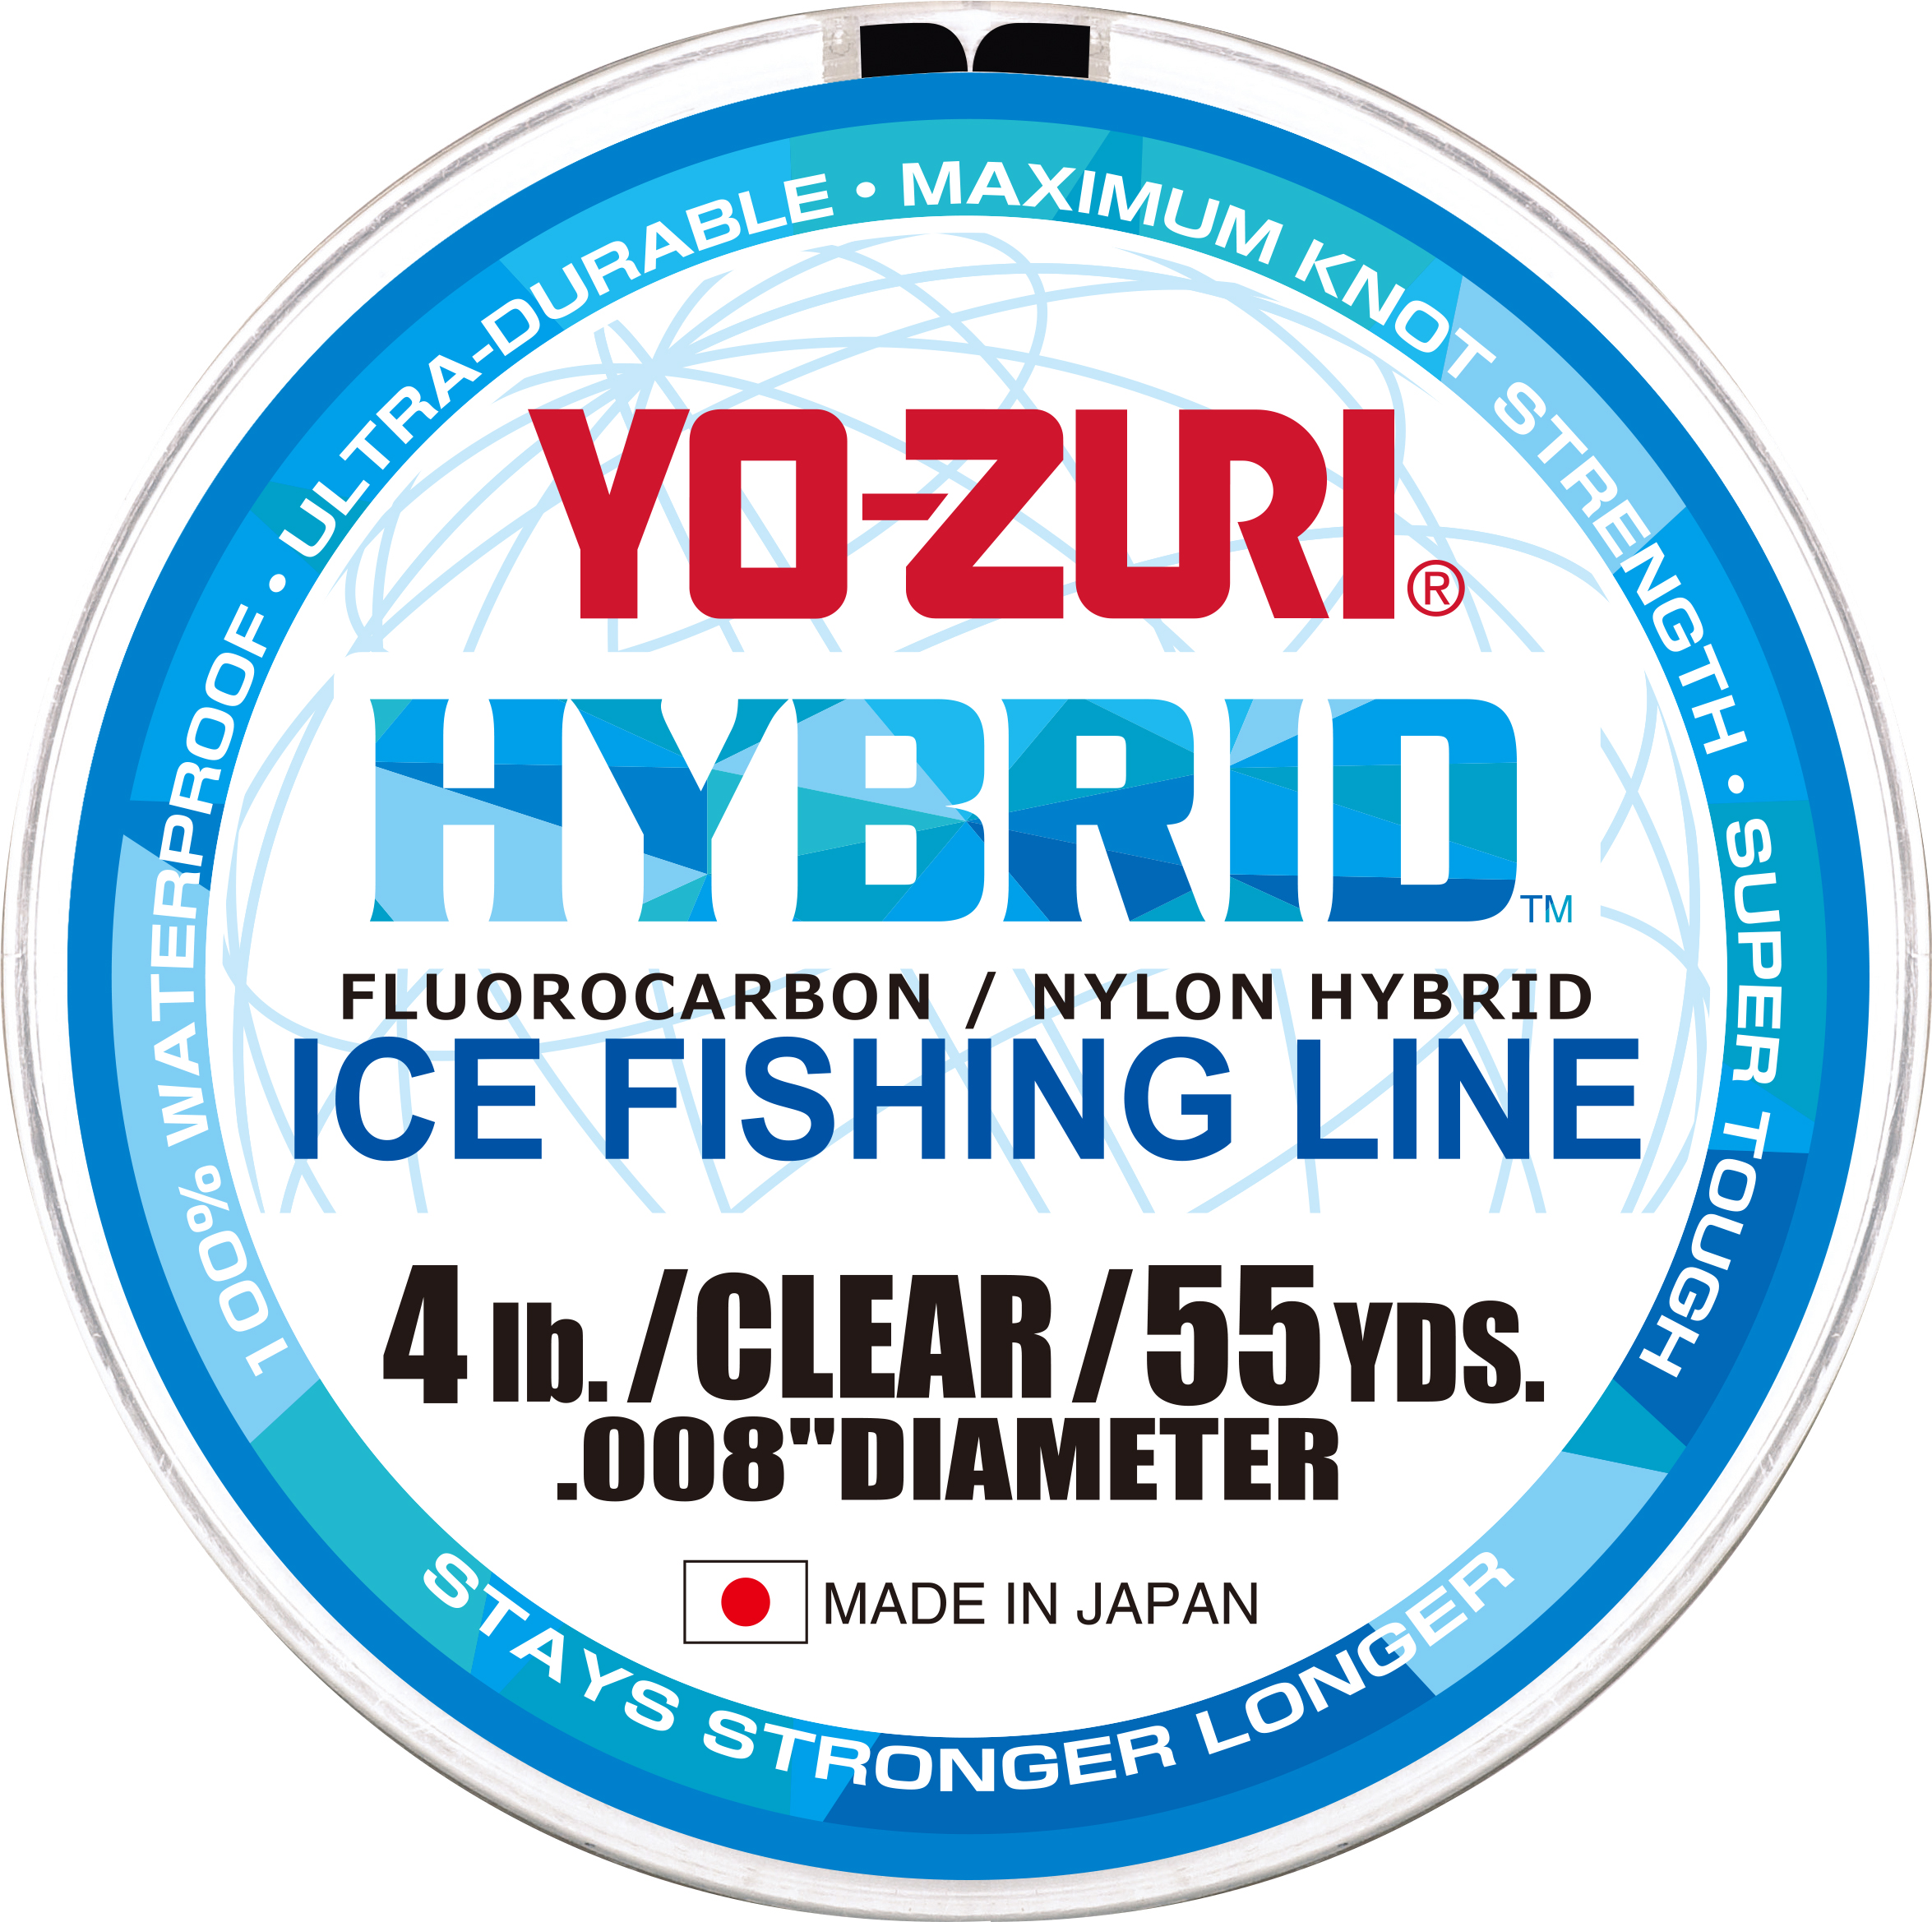 Yo-Zuri Hybrid 275Yd Clear #8lb*สายลีดฟลูออโรคาร์บอน - 7 SEAS